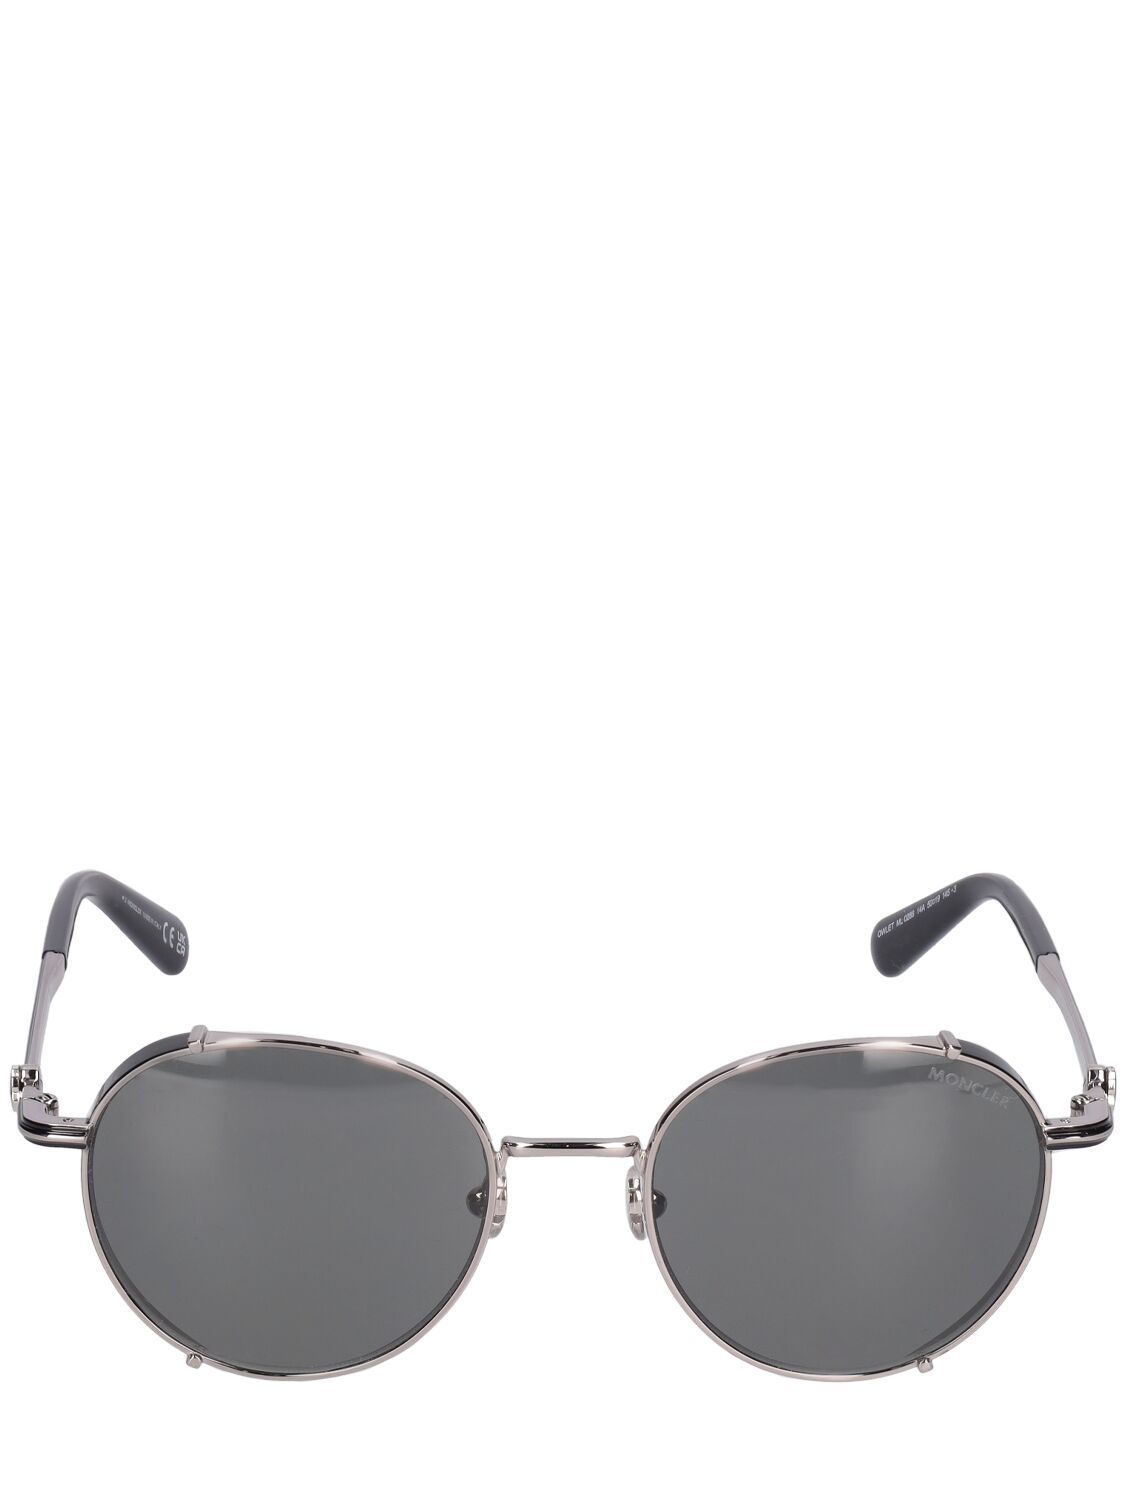 Moncler Round Metal Sunglasses In Light Ruthenium